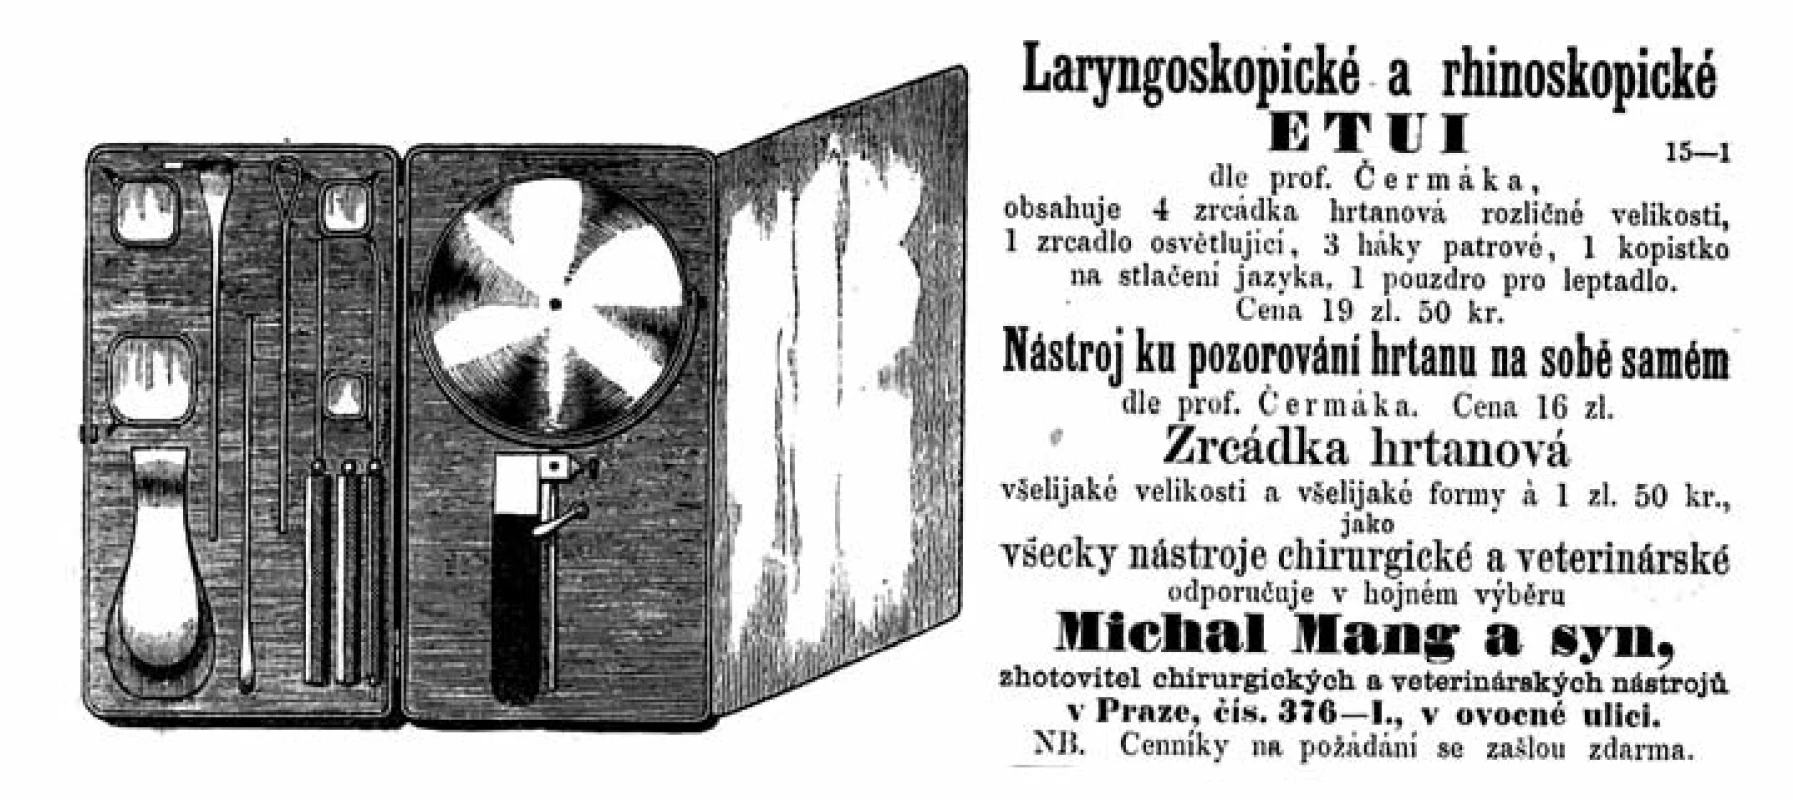 Inzerát v Časopise lékařů českých z roku 1862, nabízející nástroje pro laryngoskopii, vyrobené podle návrhu profesora Čermáka